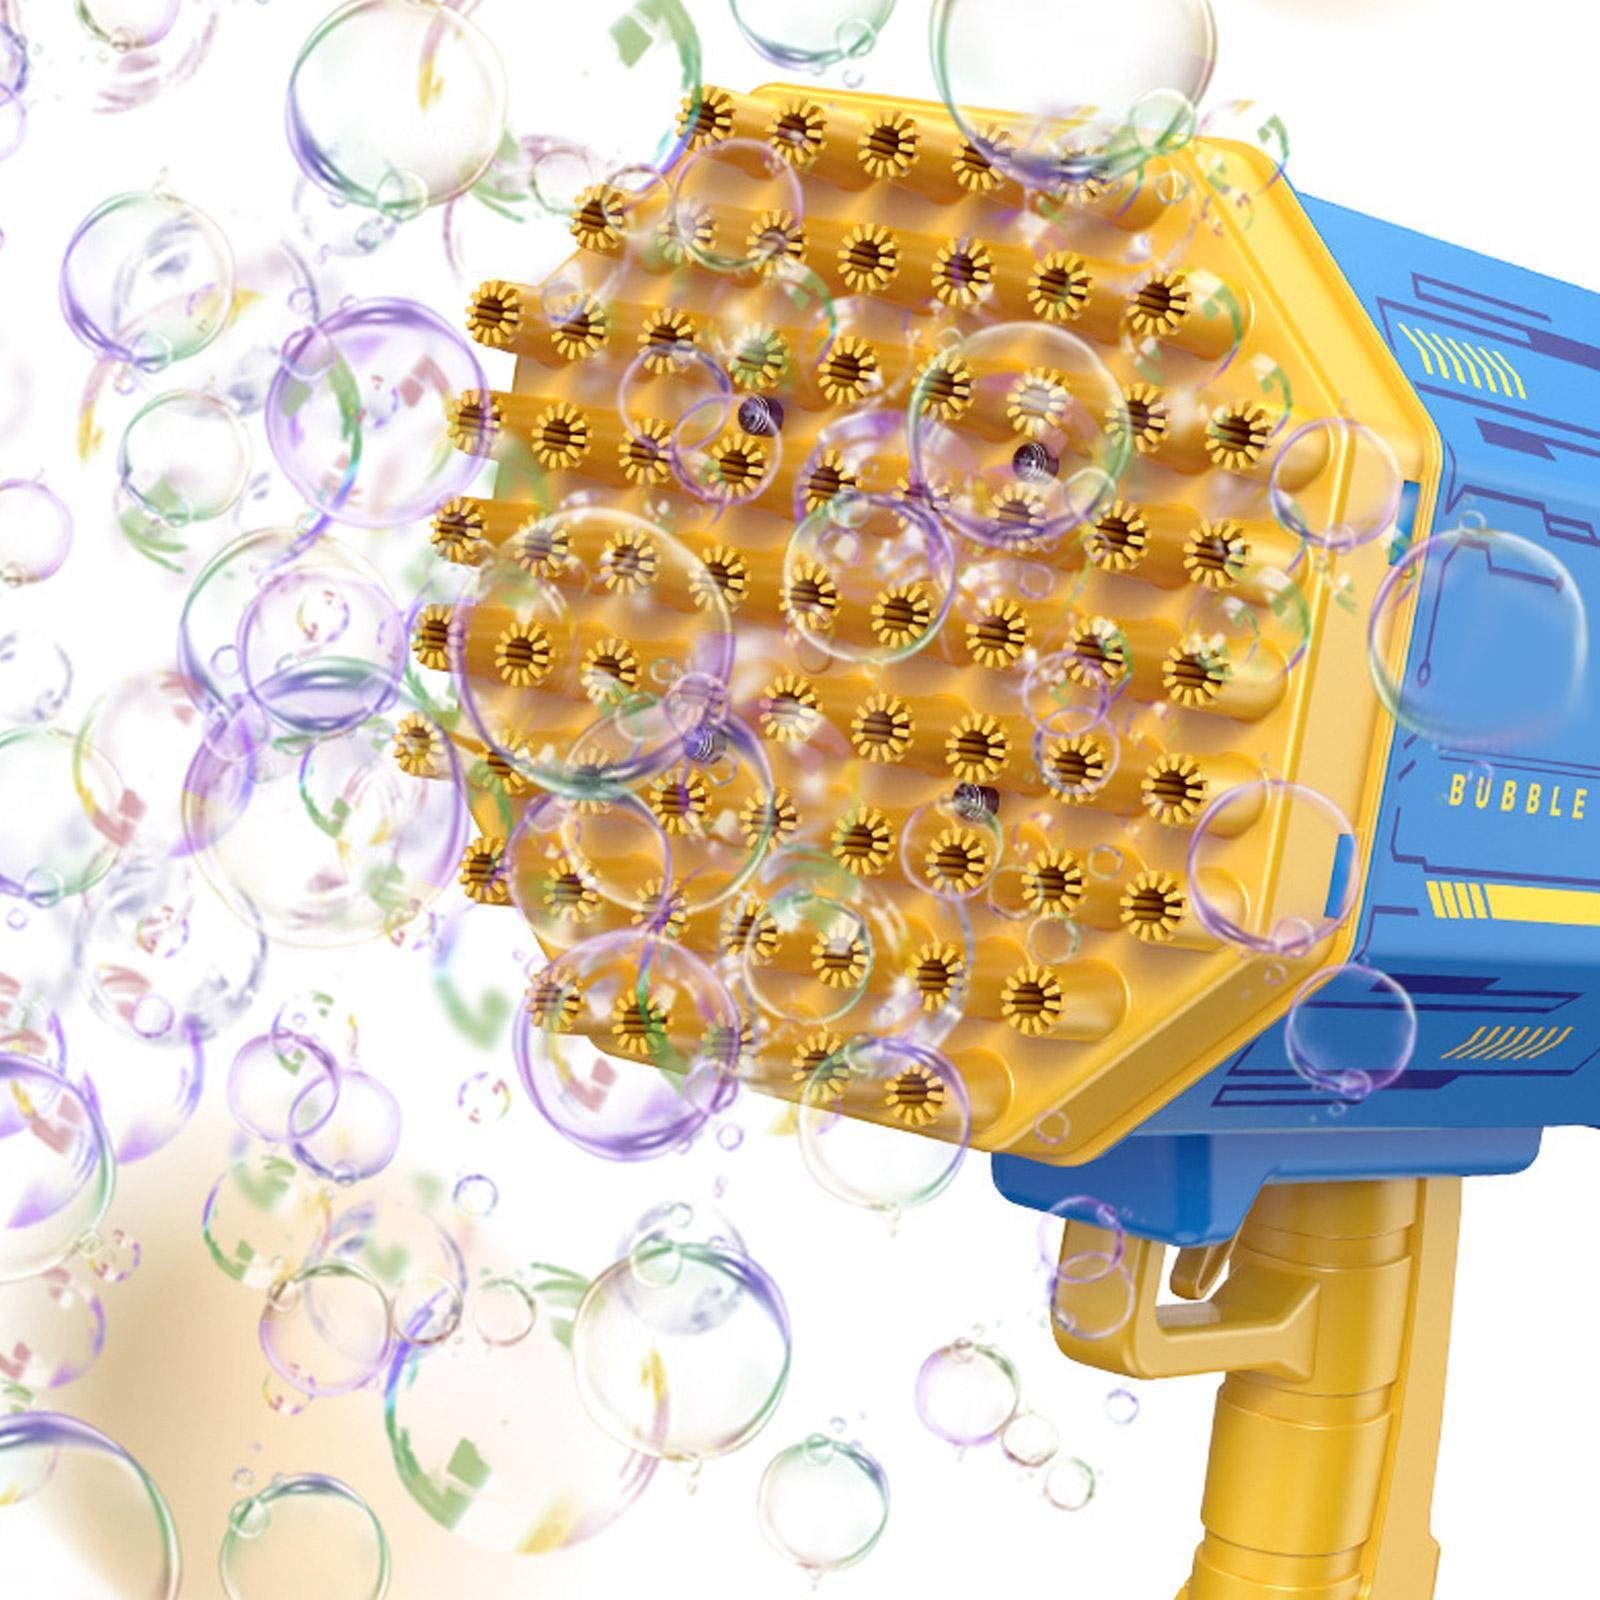 69 Holes Bubble Gun Automatic Funny Color Soaps Water Bubble Machine Toys / 22FK225 / KM-8